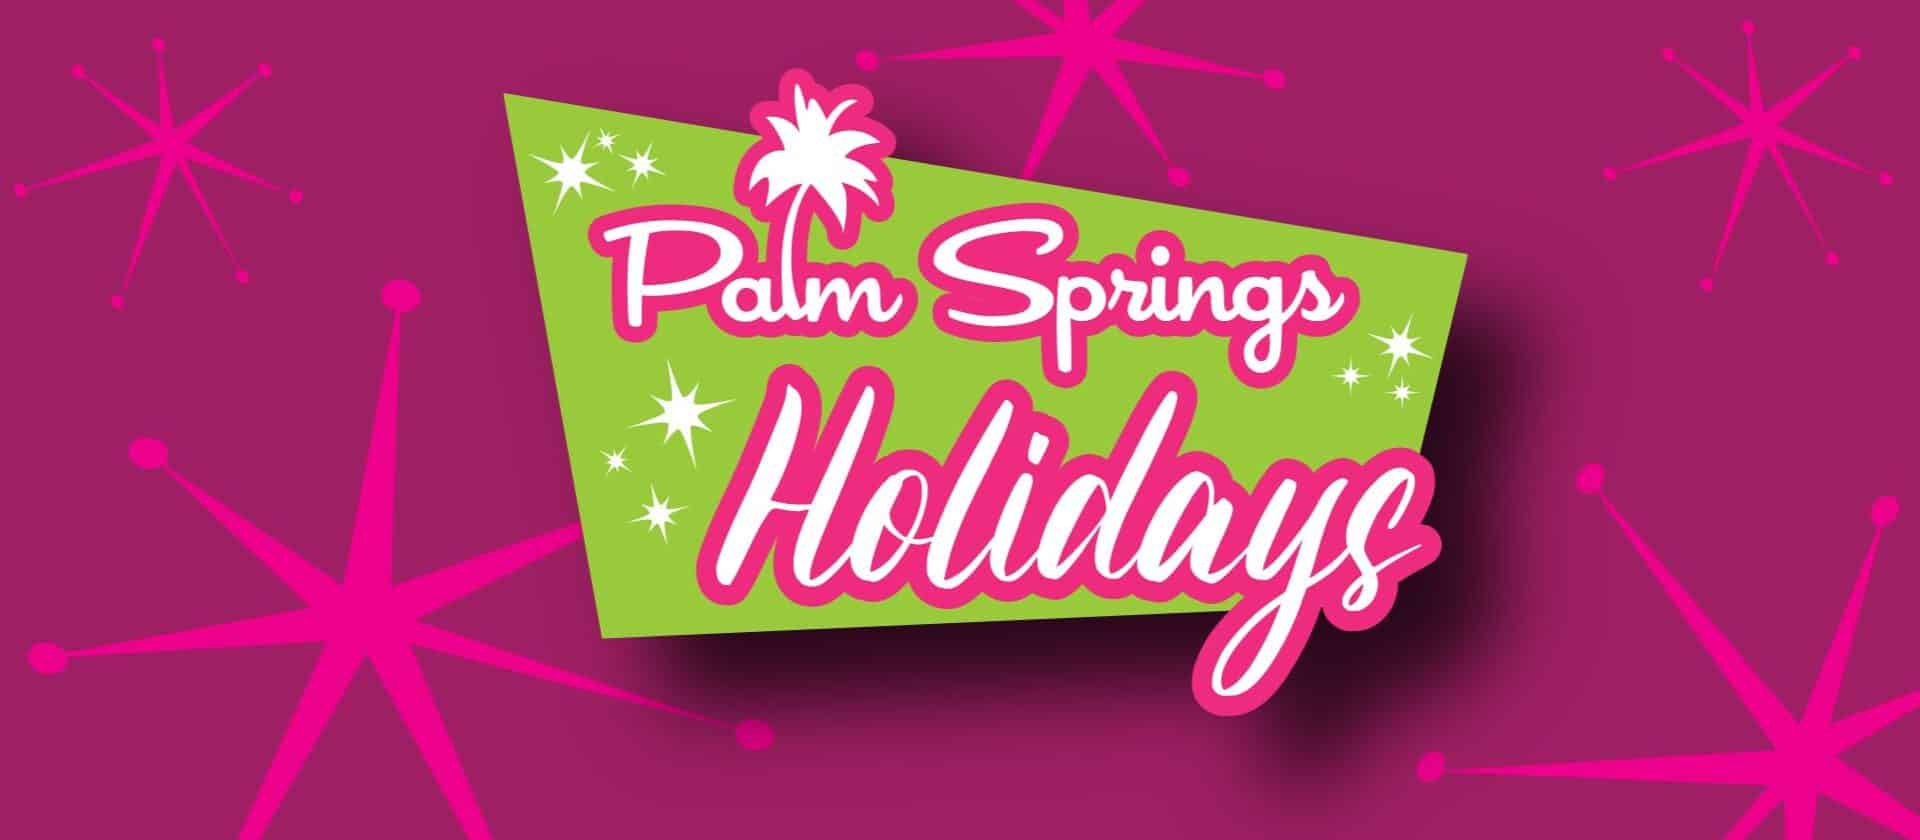 Palm Springs Holidays3